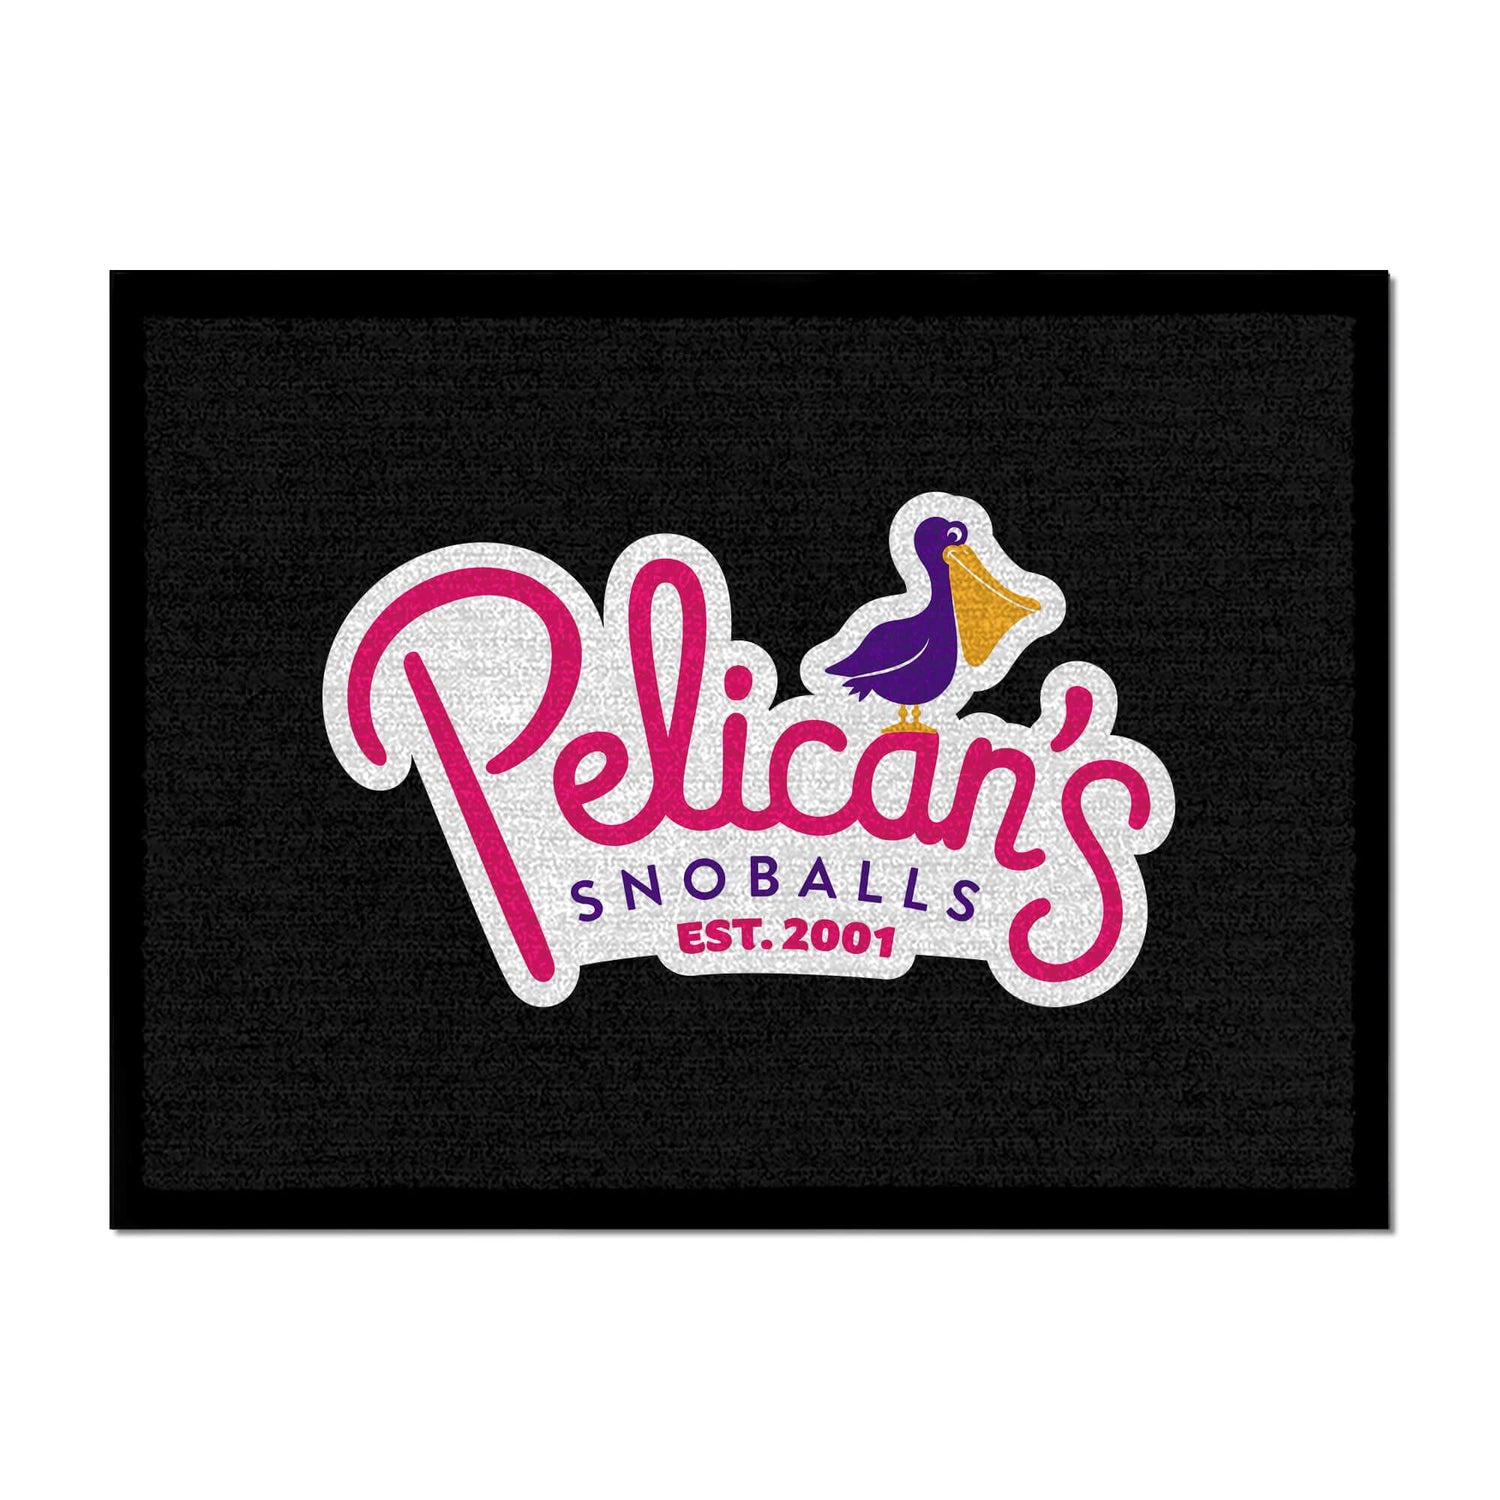 Pelicans Snoballs Door Mats 10M1200502